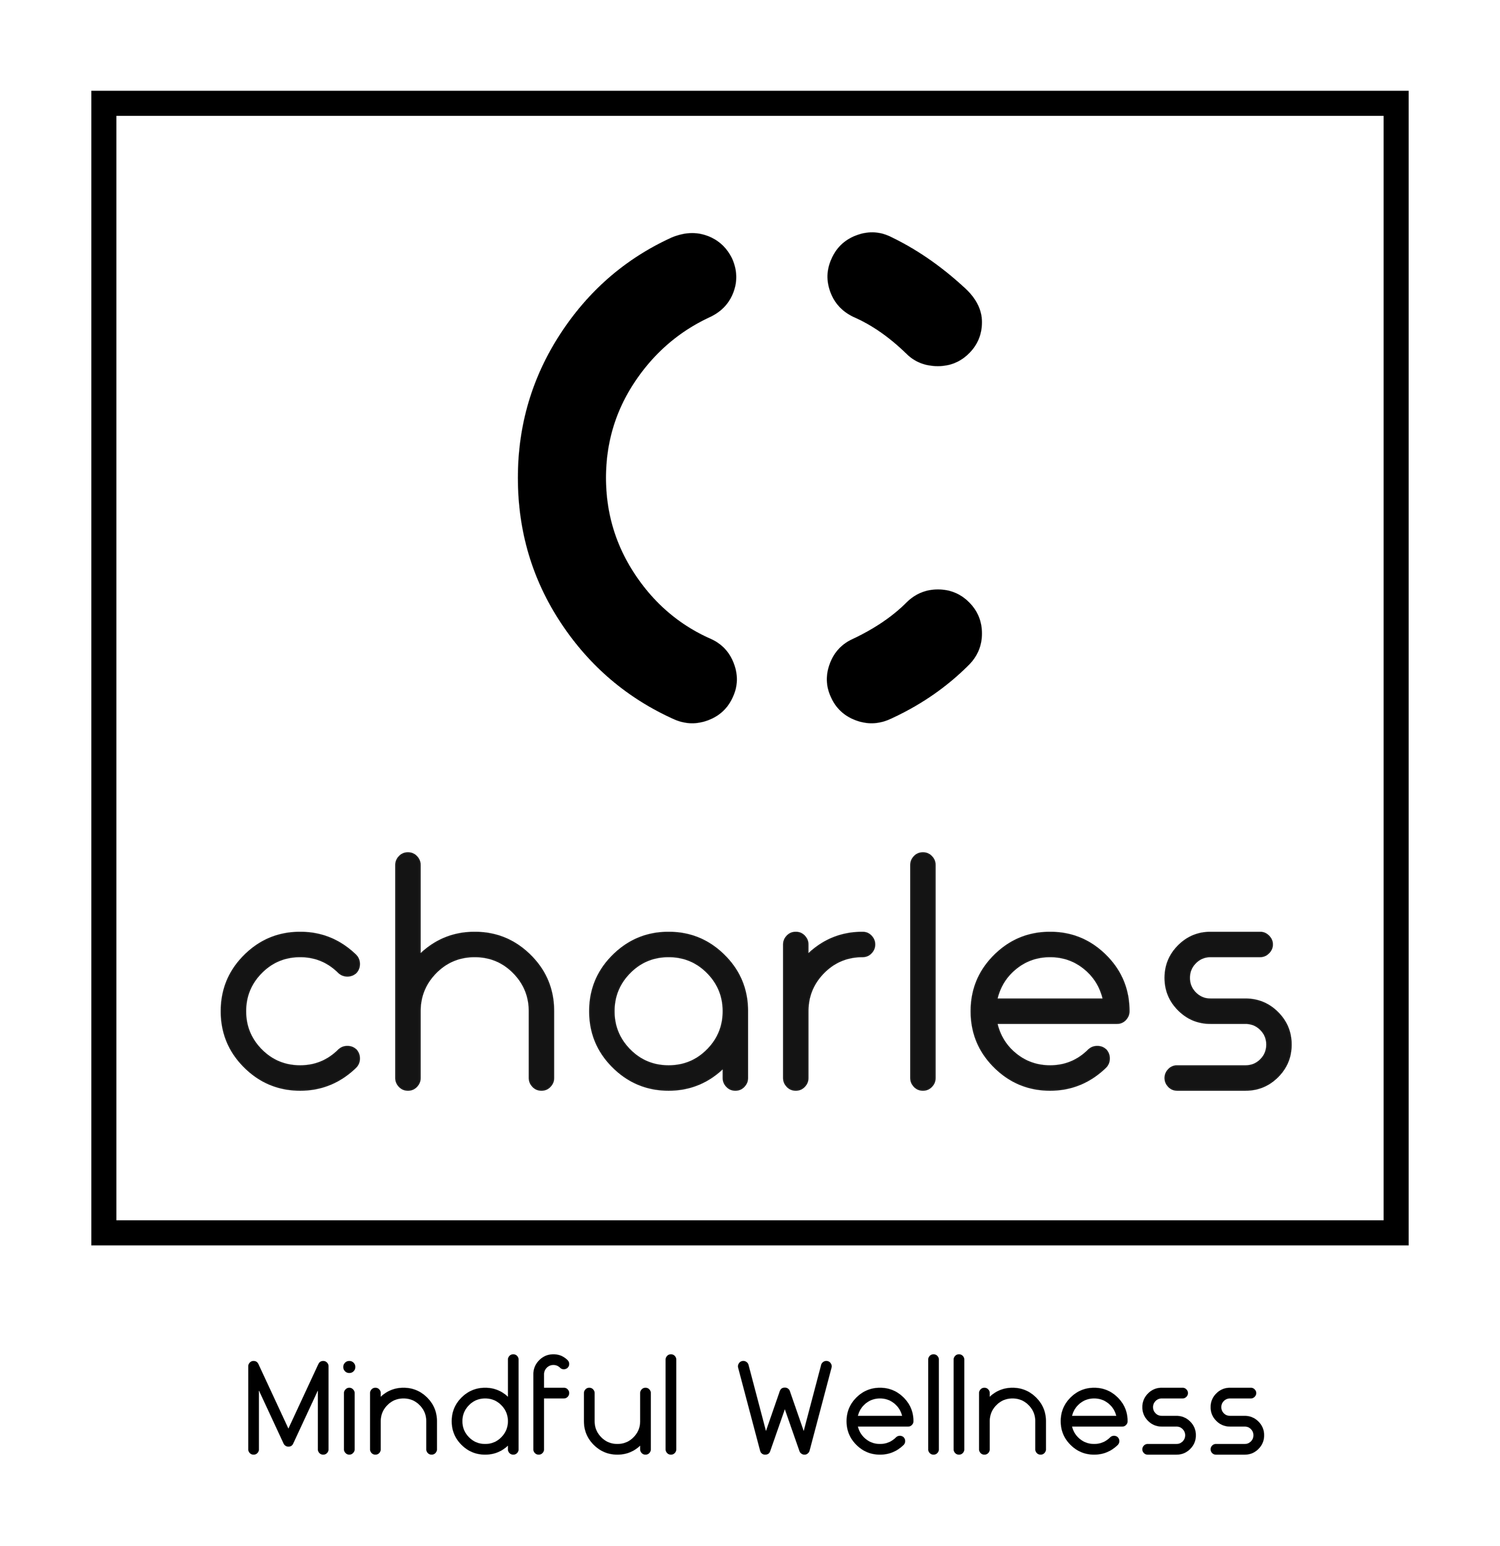 Charles Mindful Wellness